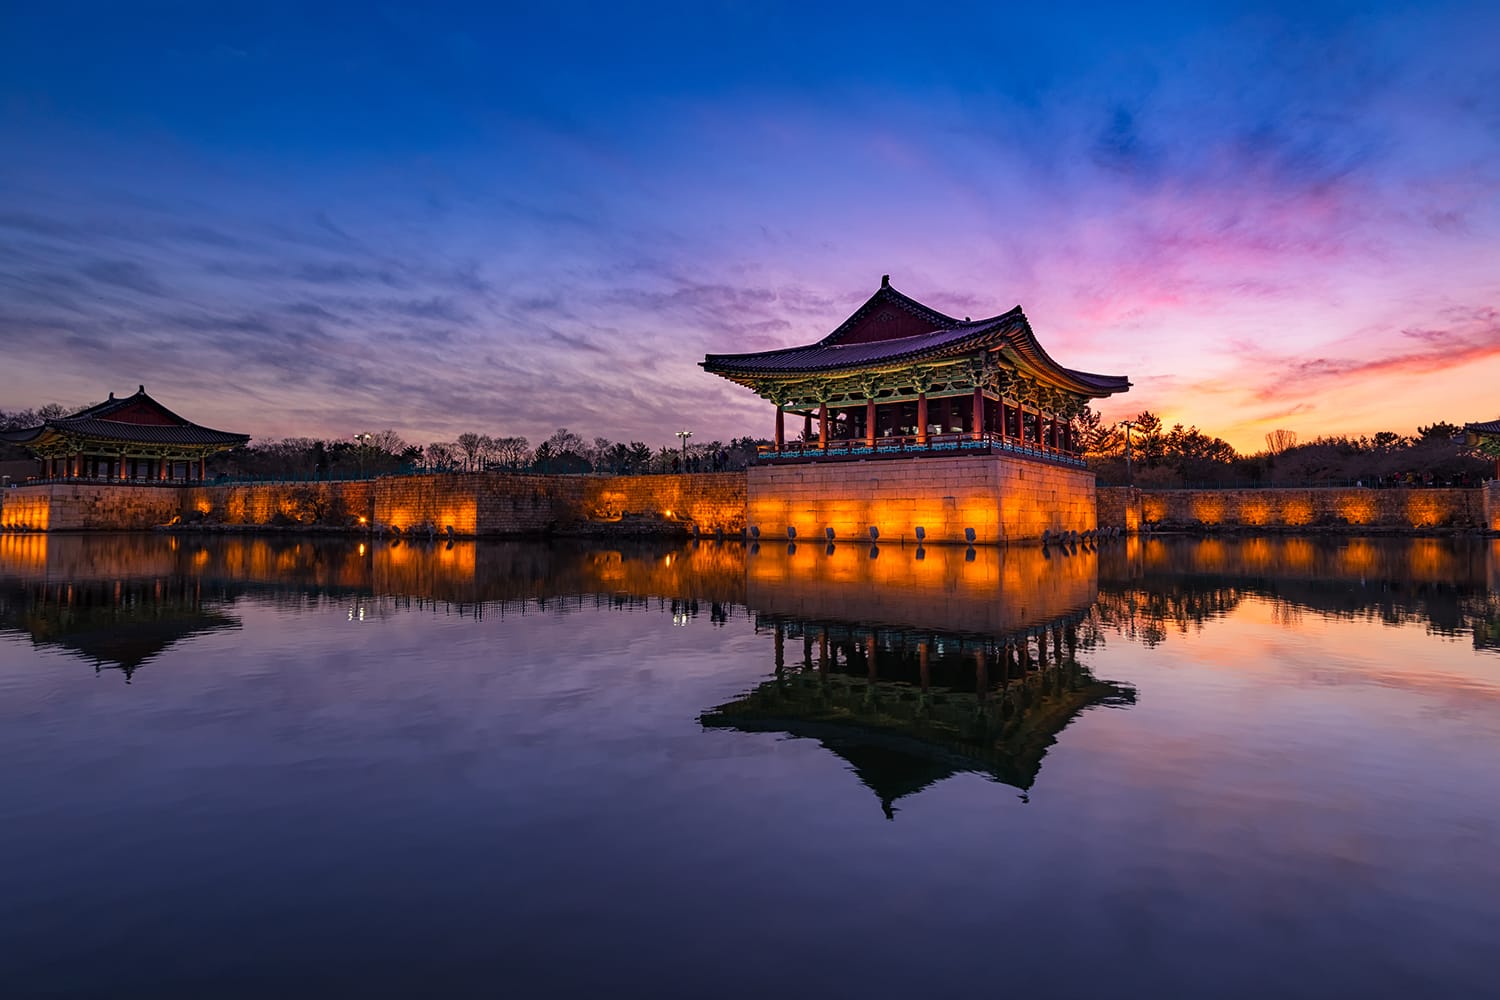 sunset-donggung-palace-wolji-pond-gyeongju-south-korea-shutterstock_1044060244.jpg